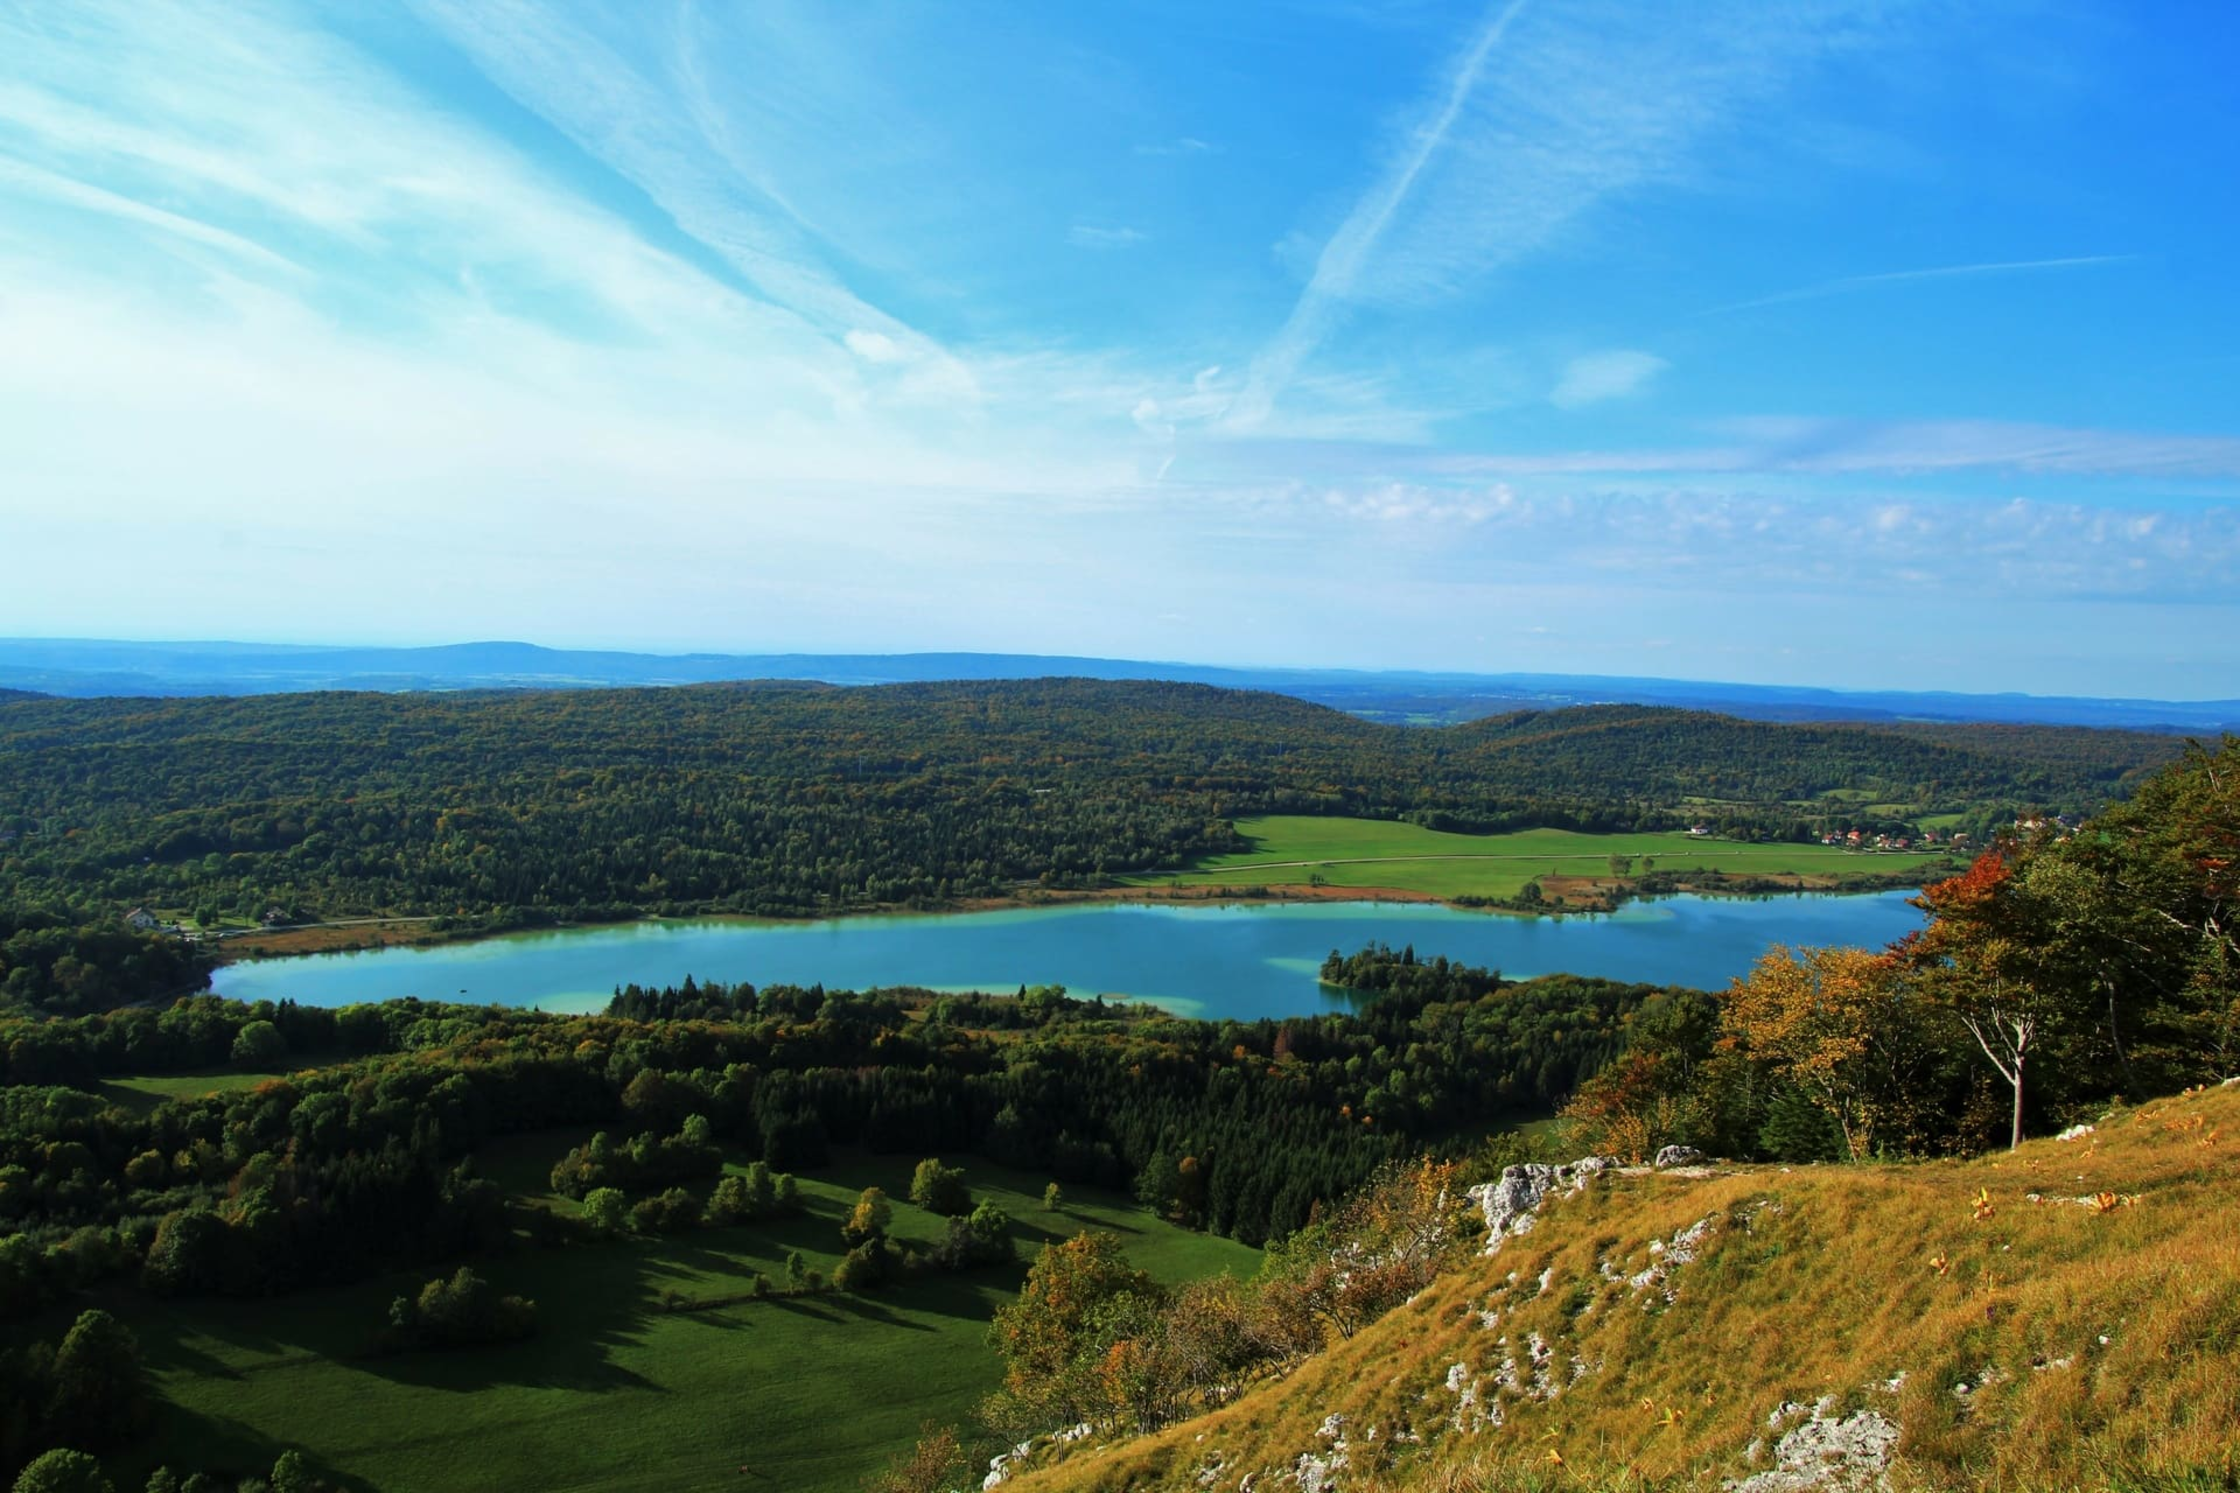 Randonnée pic de l'Aigle : lac bleu turquoise, entouré de végétation verdoyante